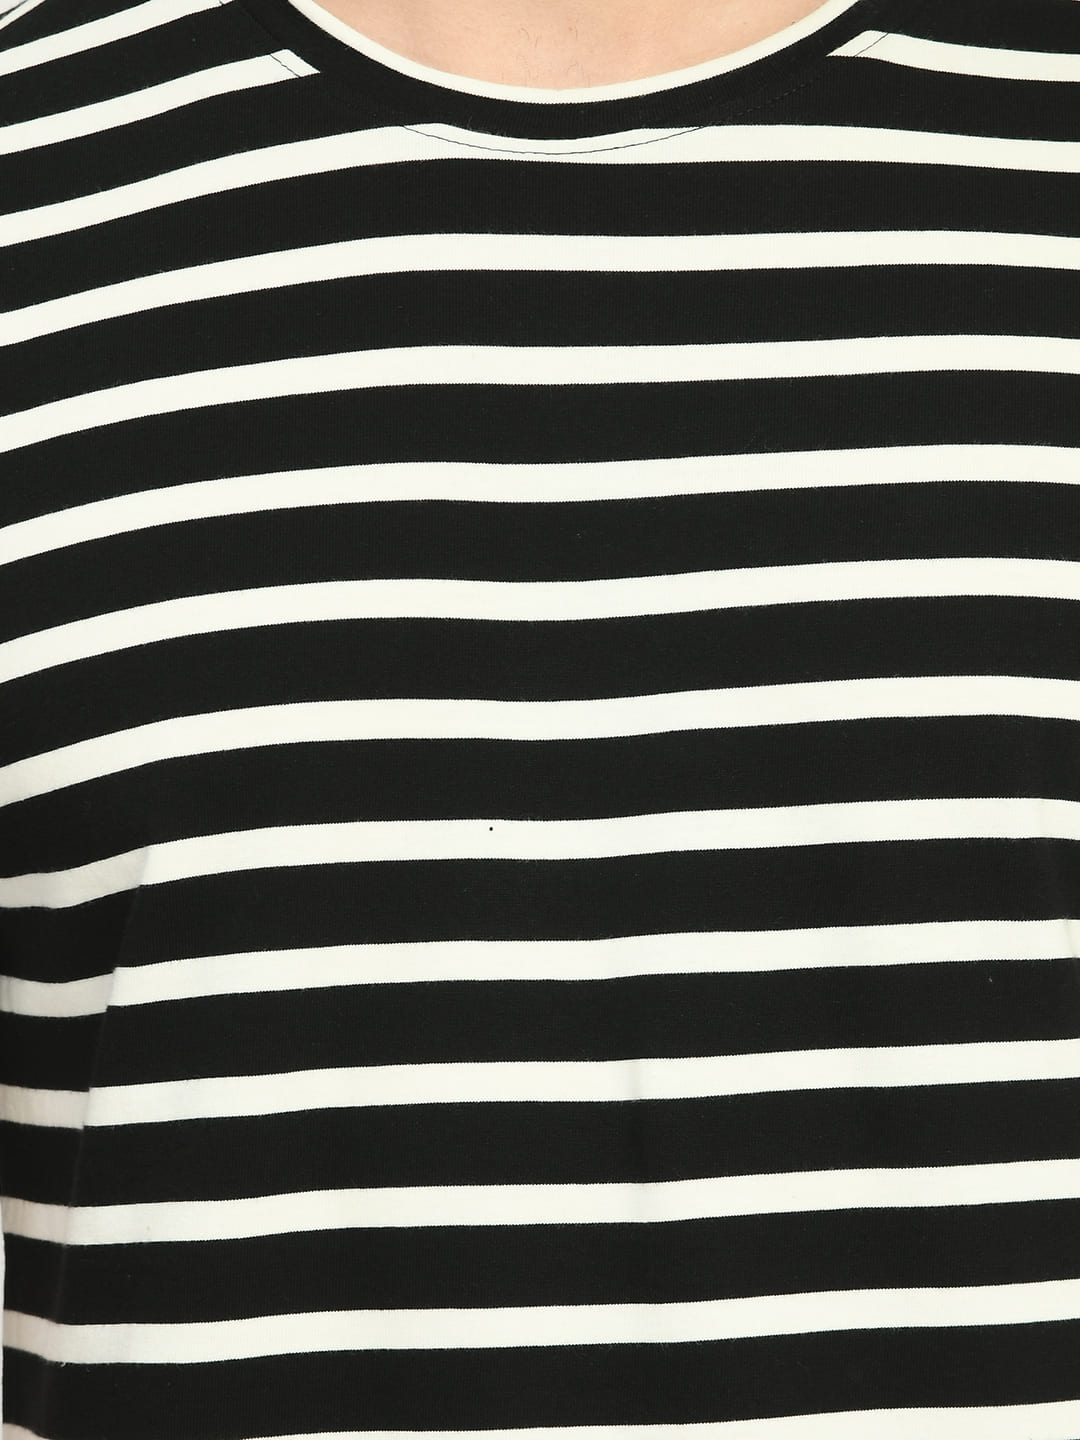 Men's Black White Striped Regular Fit T-Shirt